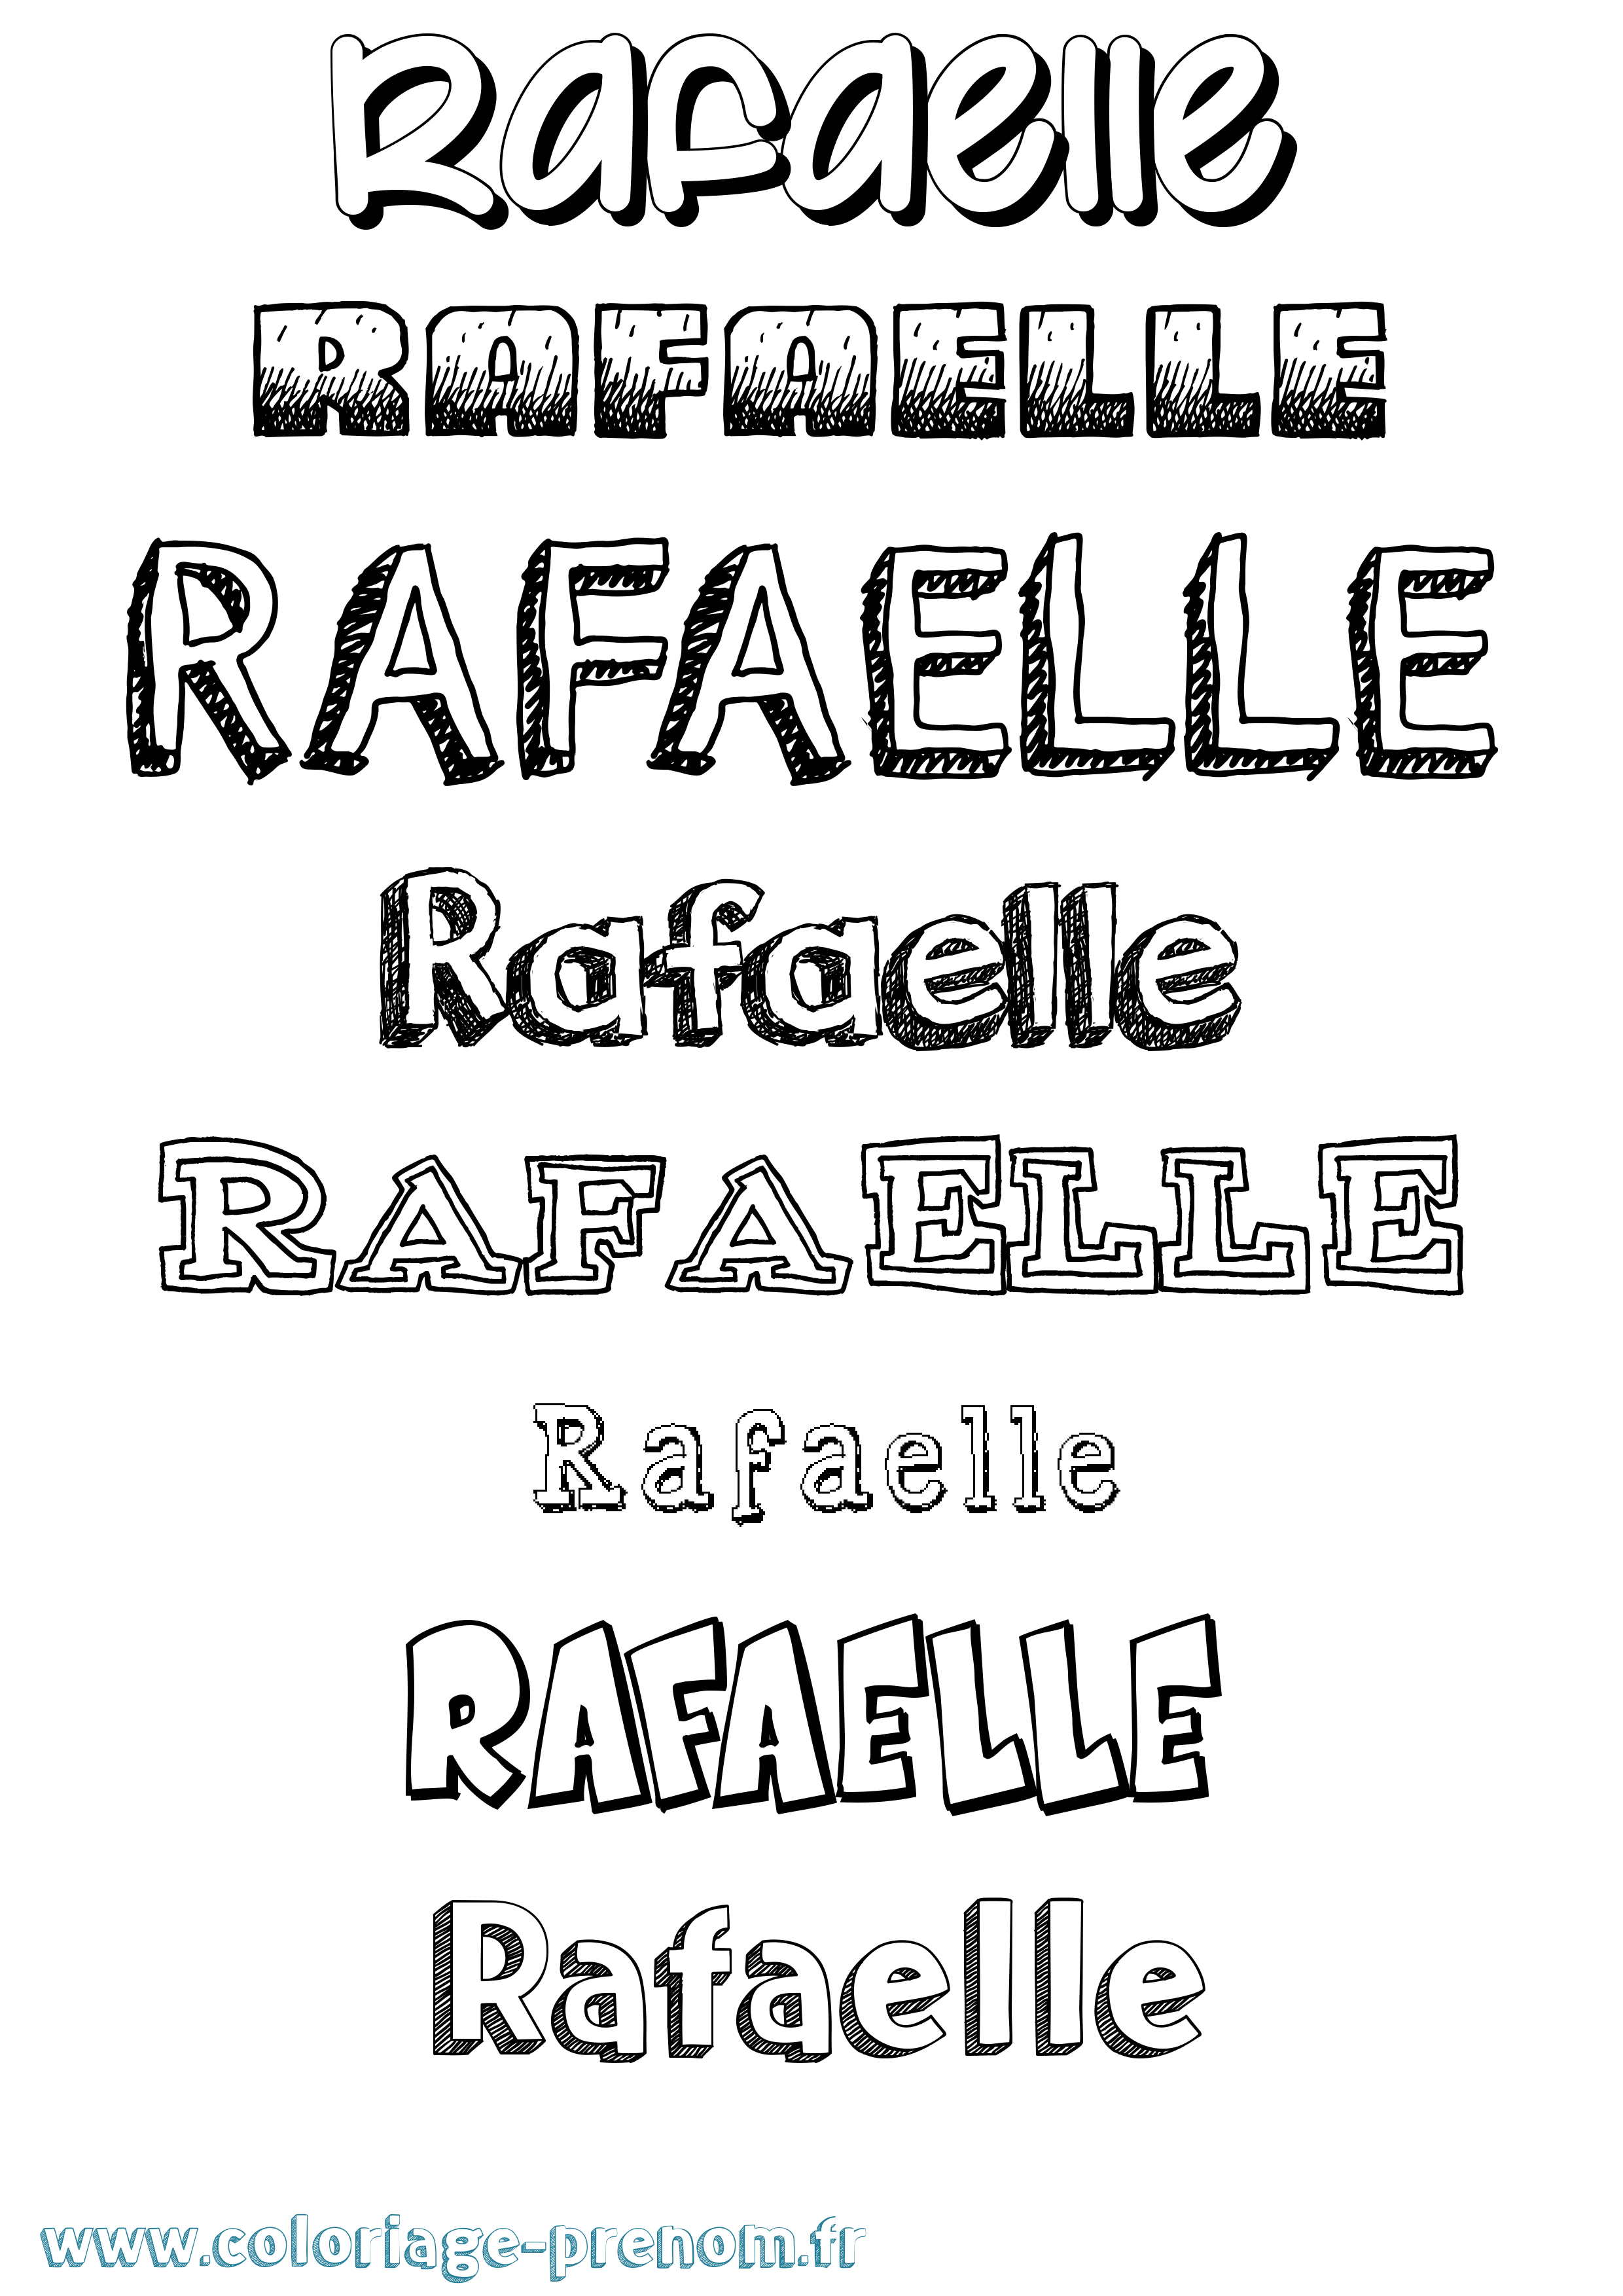 Coloriage prénom Rafaelle Dessiné